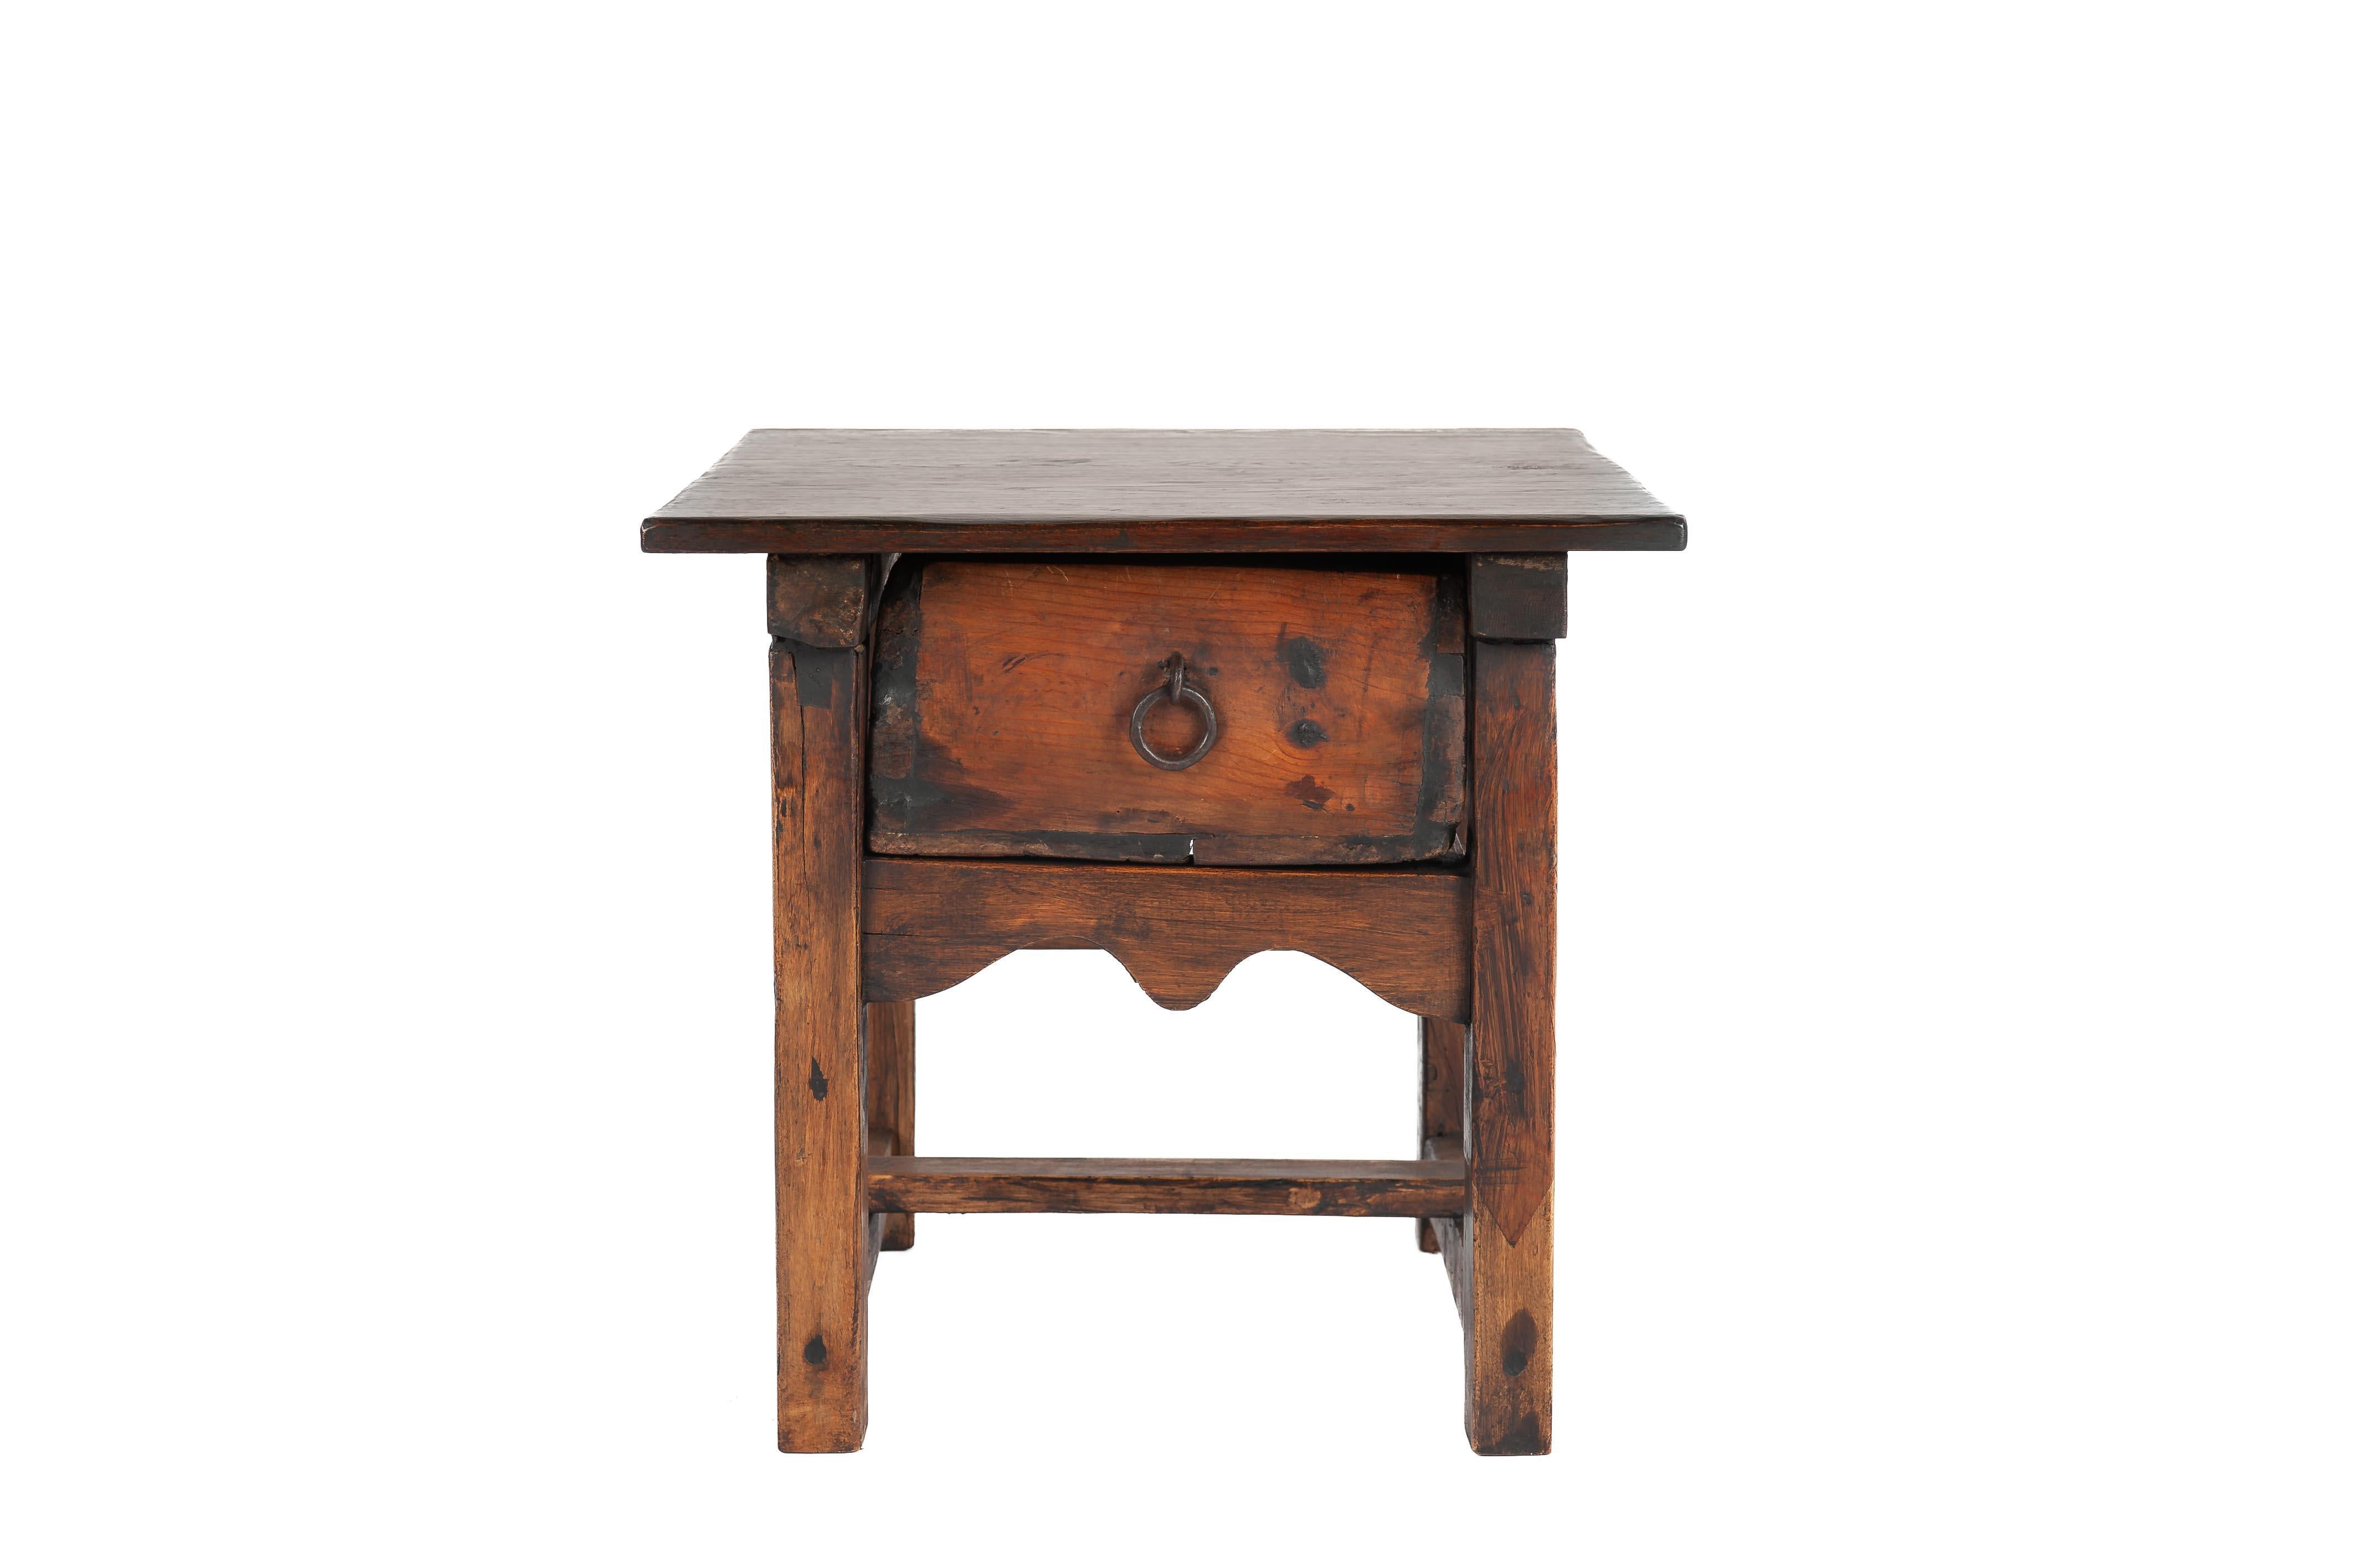 Une belle table d'appoint ancienne fabriquée dans l'Espagne rurale vers 1820. Le plateau rectangulaire en chêne massif sculpté à la main a été fabriqué à partir d'une seule planche de bois et a été assemblé à la base en pin par des joints en queue